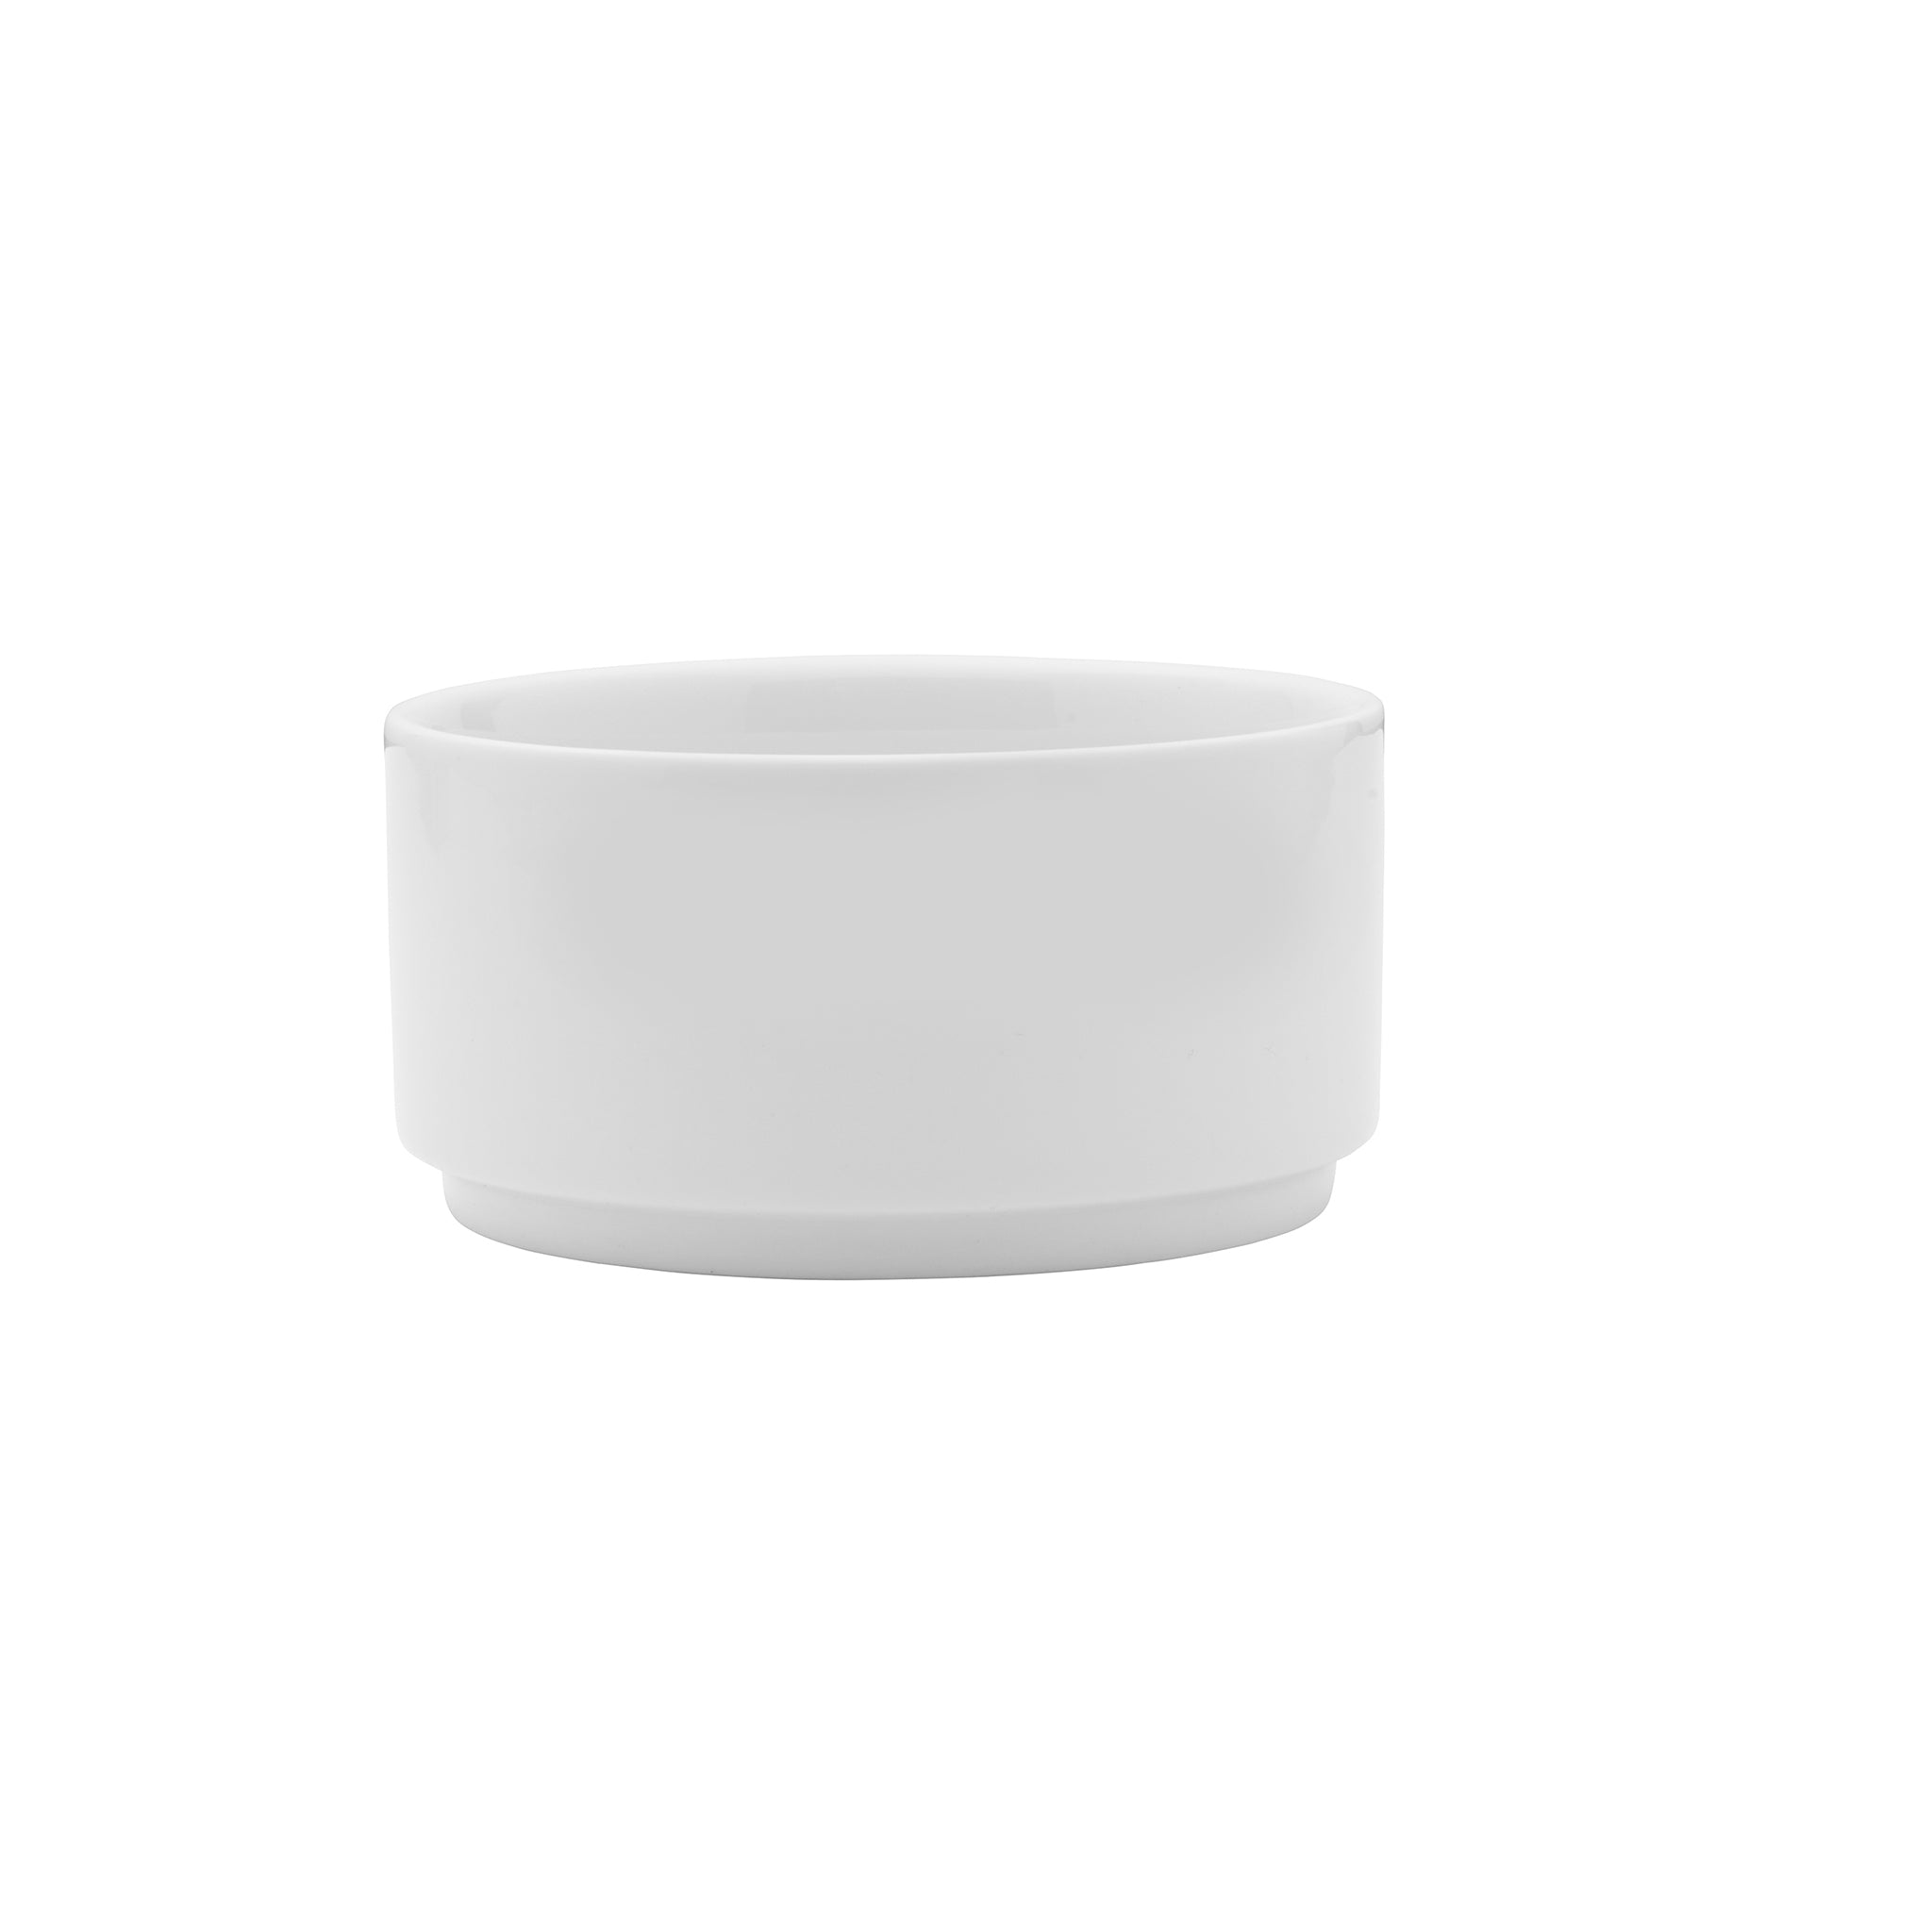 Galleria Porcelain Bowl 7" / 46oz White